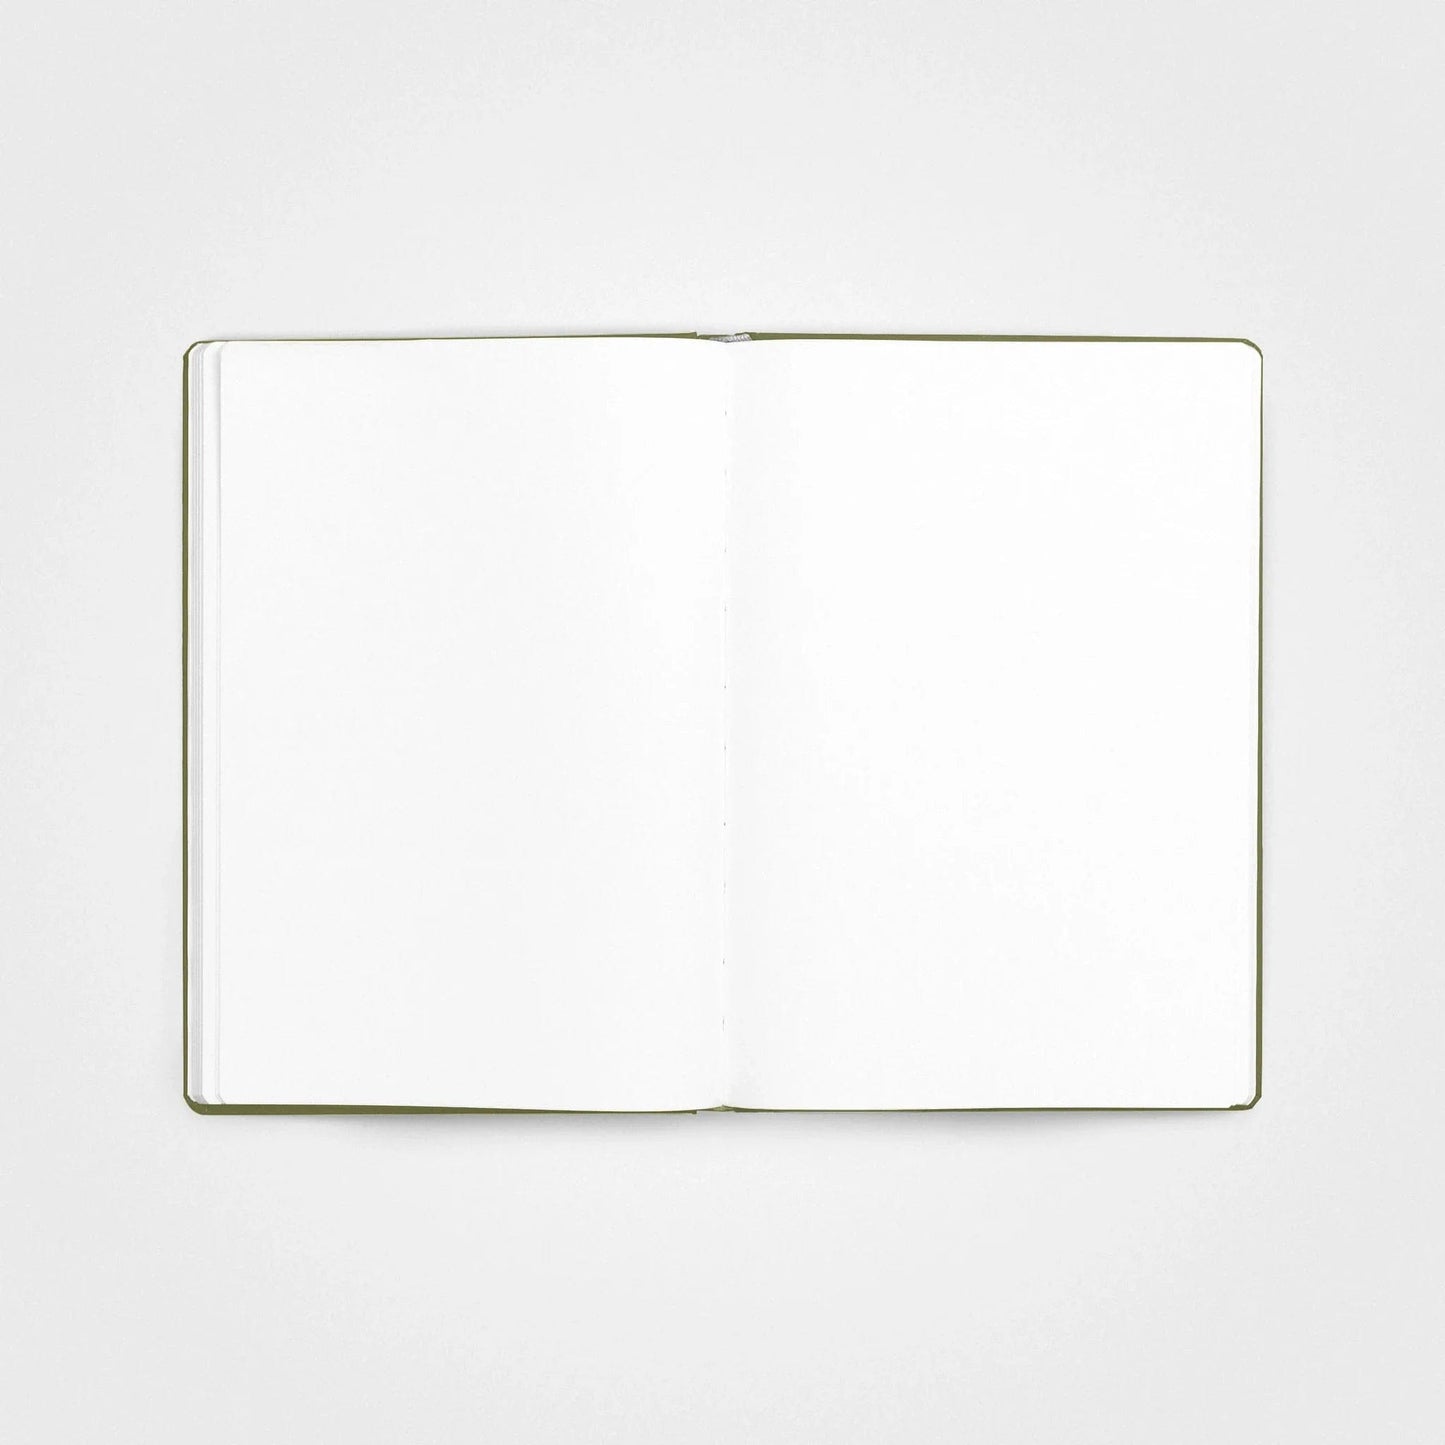 Steinpapier-Notizbuch – A5 Hardcover, Grass Green